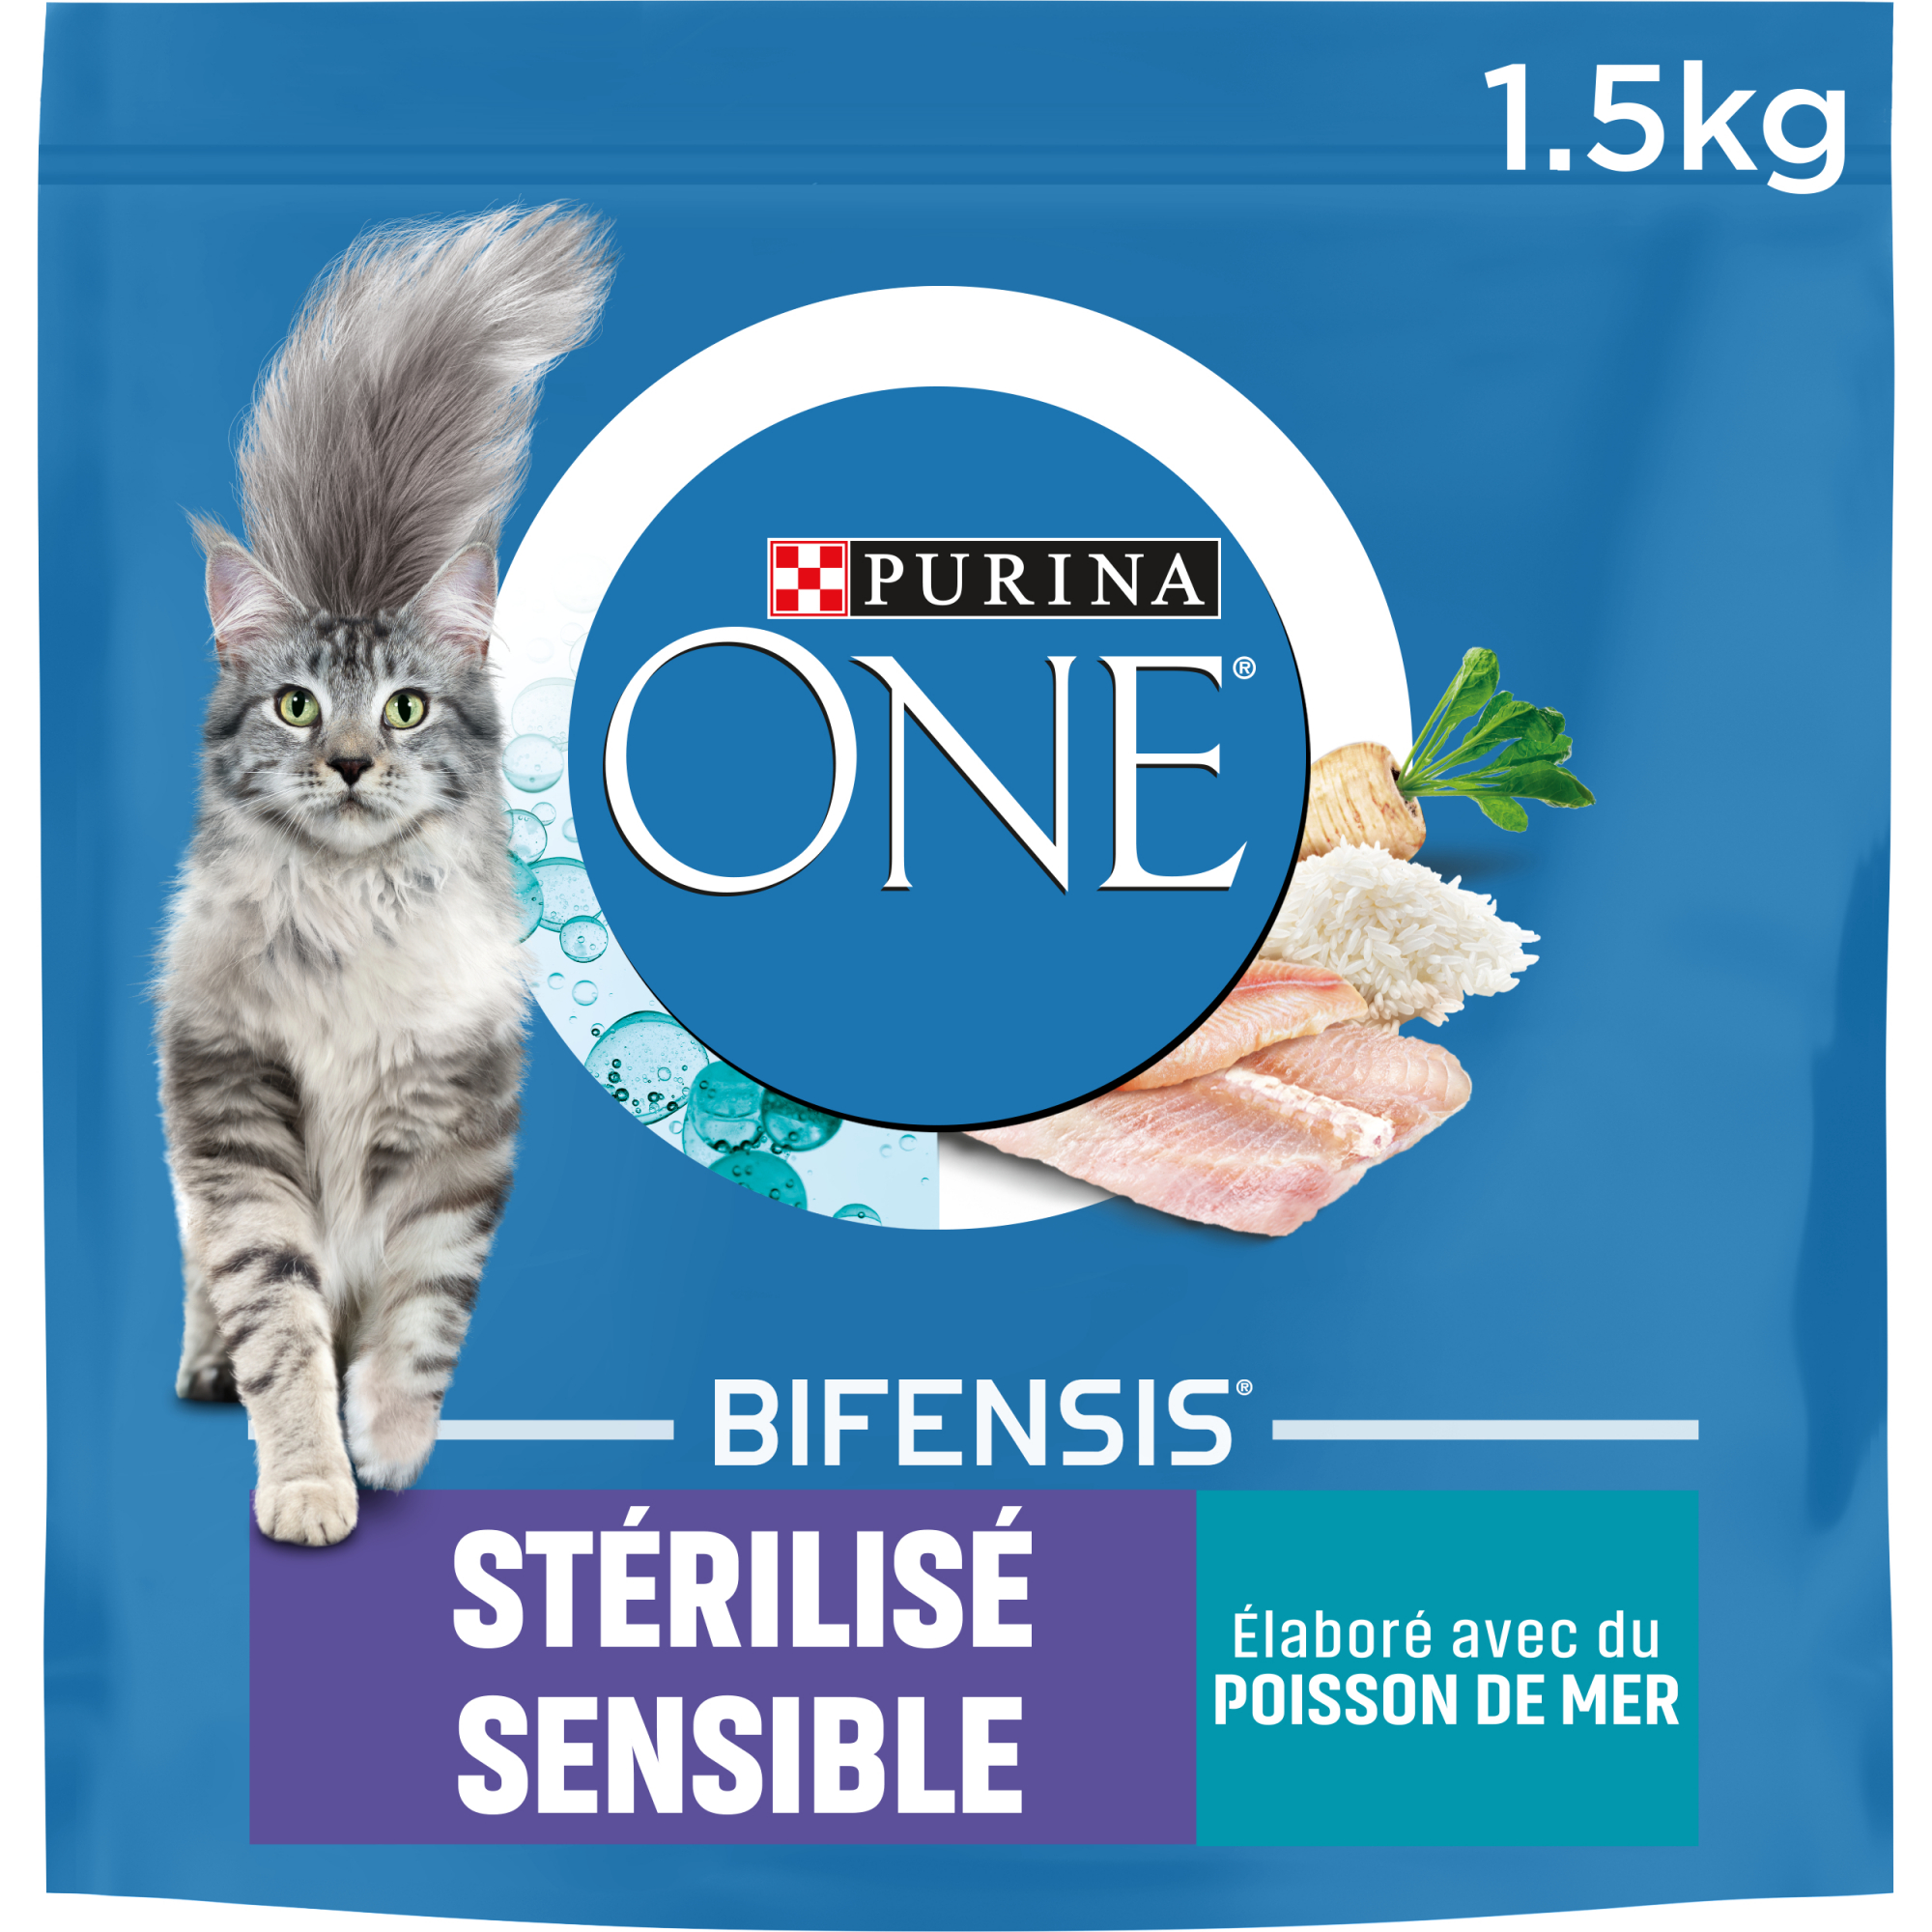 PURINA ONE Stérilisé Sensible de peixe com cereais integrais para gatos esterilizados sensíveis